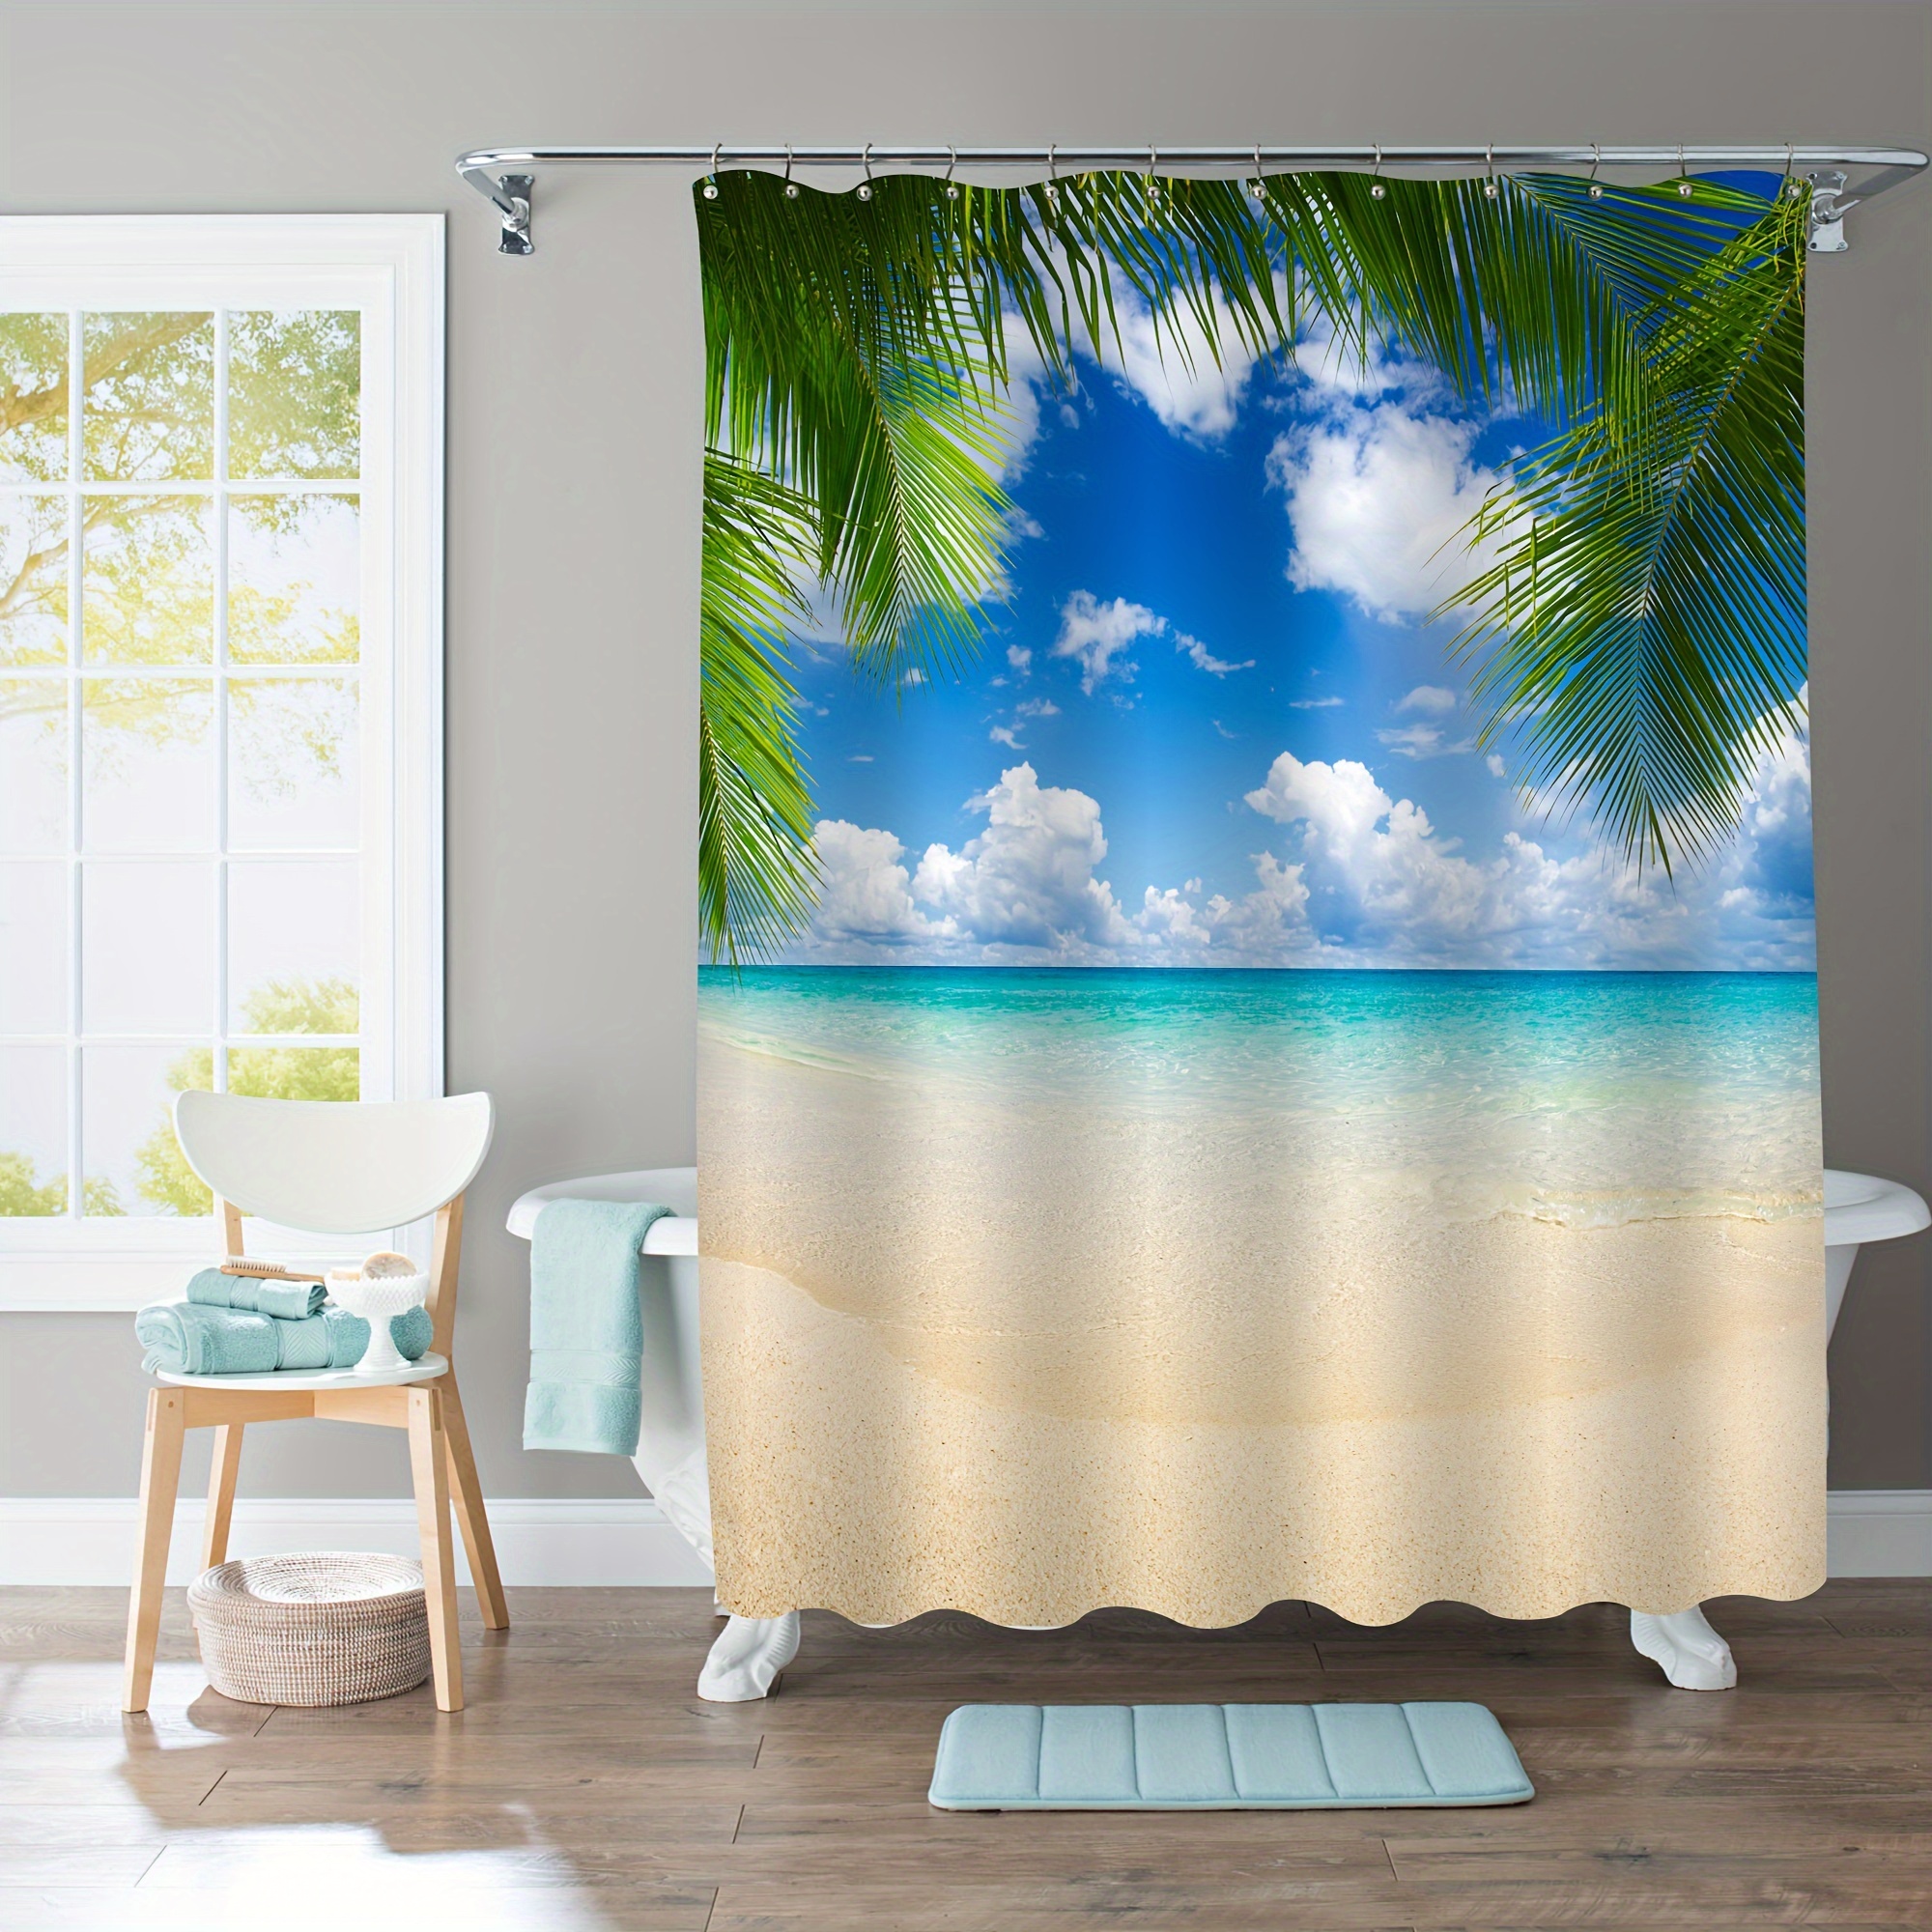 Juegos de baño 4 pc con accesorios para cortinas ducha y alfombras Sea shell